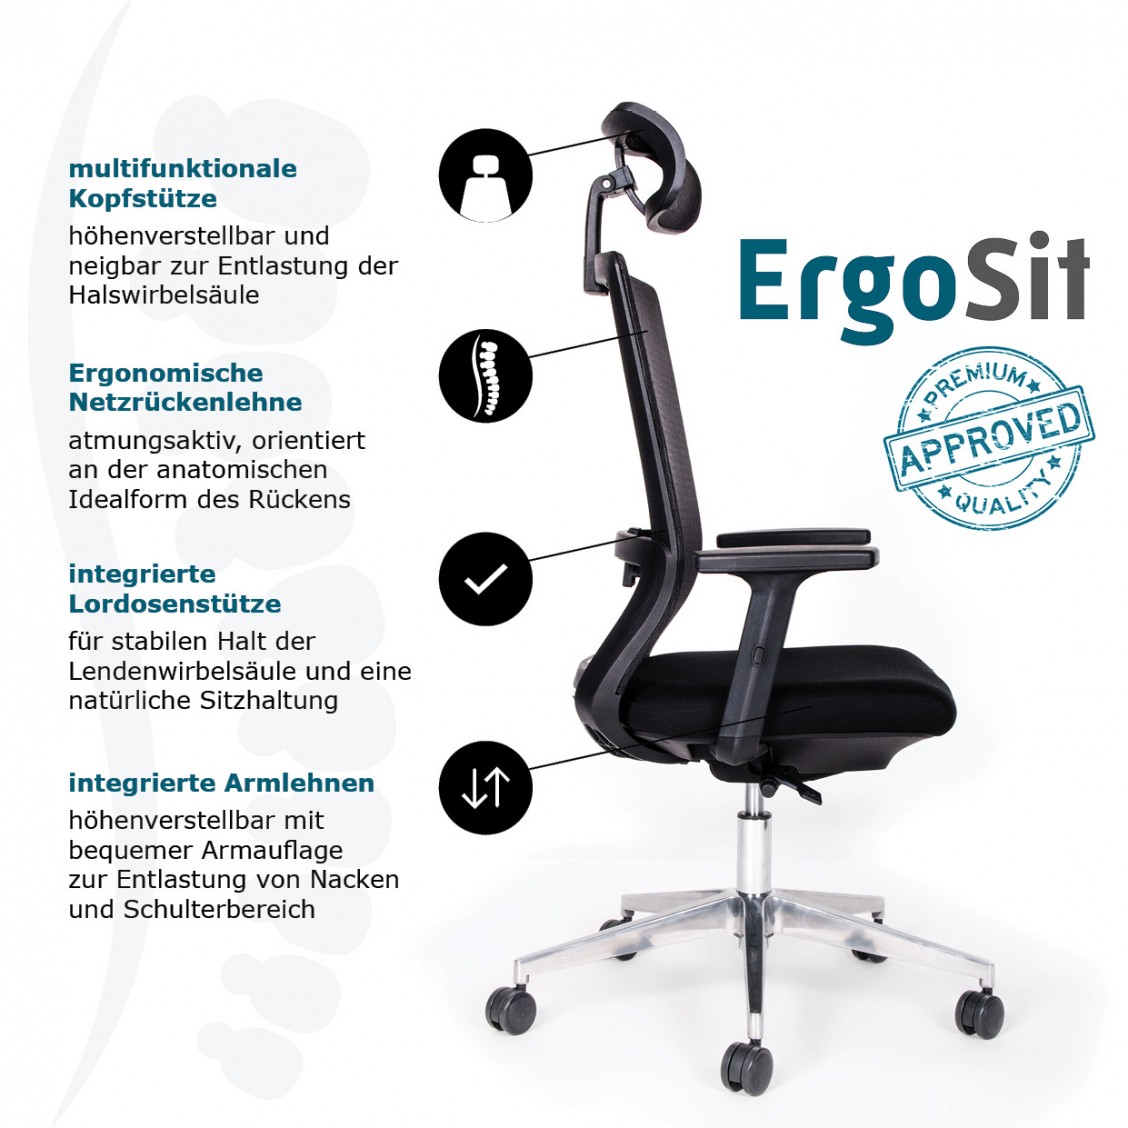 ErgoSit ergonomischer Bürostuhl mit Armlehnen und Kopfstütze